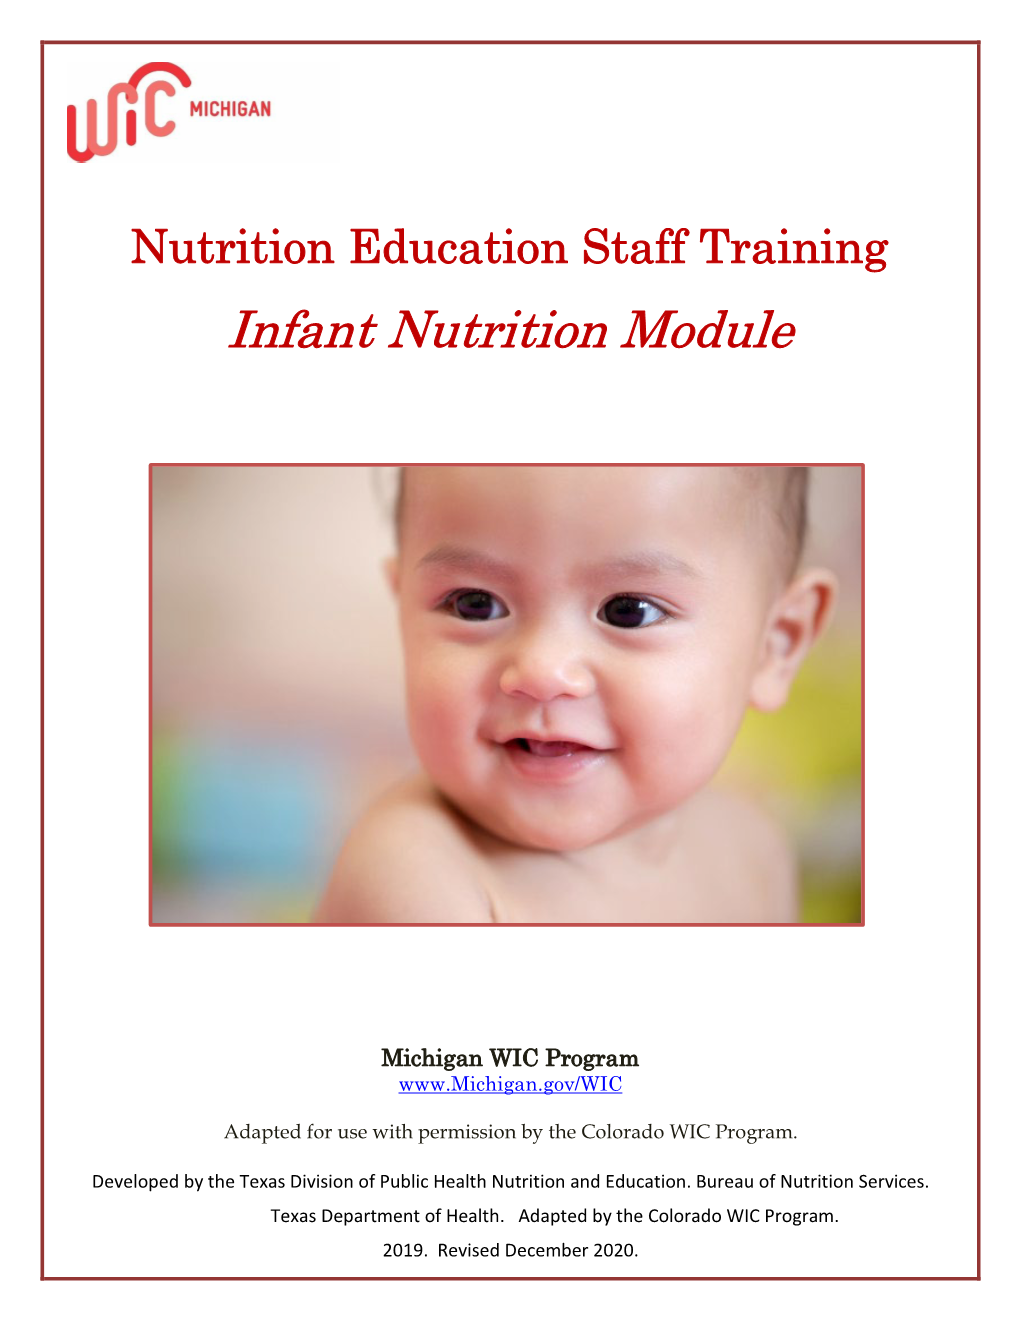 Infant Nutrition Module